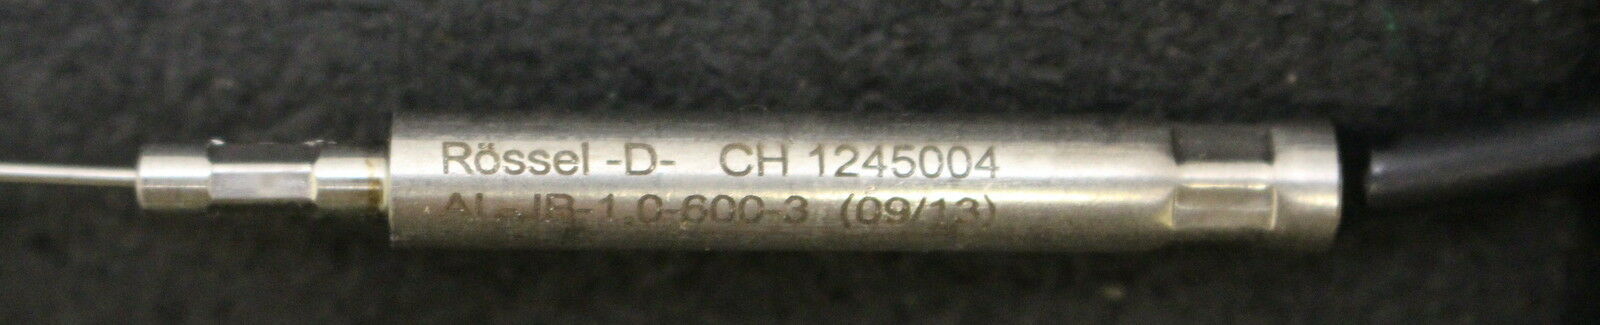 RÖSSEL Messwertumformer Mantel-Thermoelement AL-JB-1,0-600-3 AL -D-CH 1245004